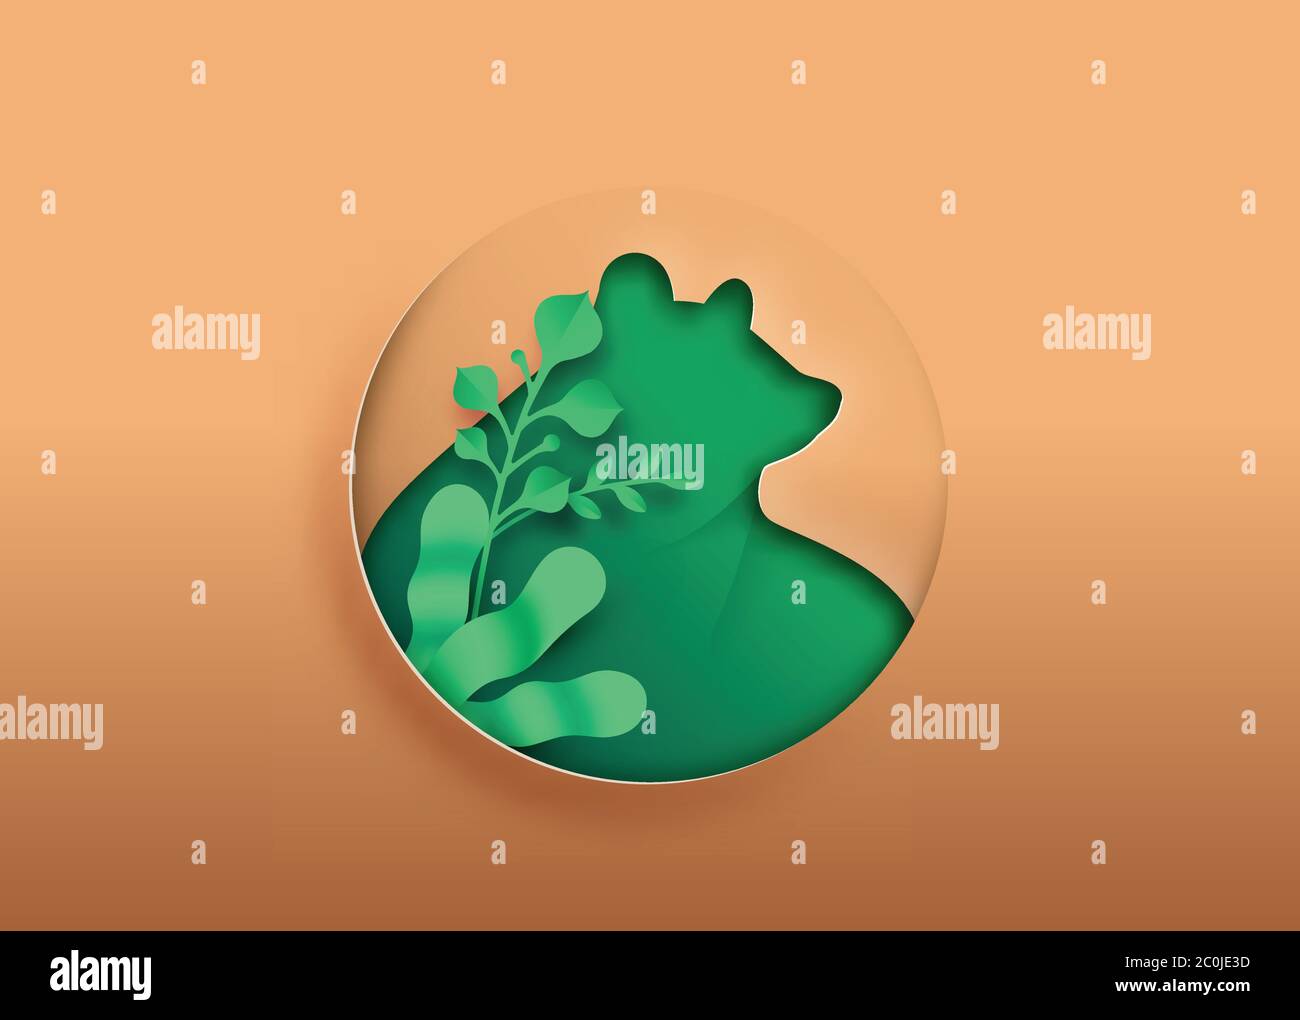 Bear Papier Schnitt Illustration mit grünen Pflanzenblatt, kreisförmige Ausschnitt für Wildtierschutz, Bildung oder umweltfreundliche Konzept. Tierwelt Stock Vektor